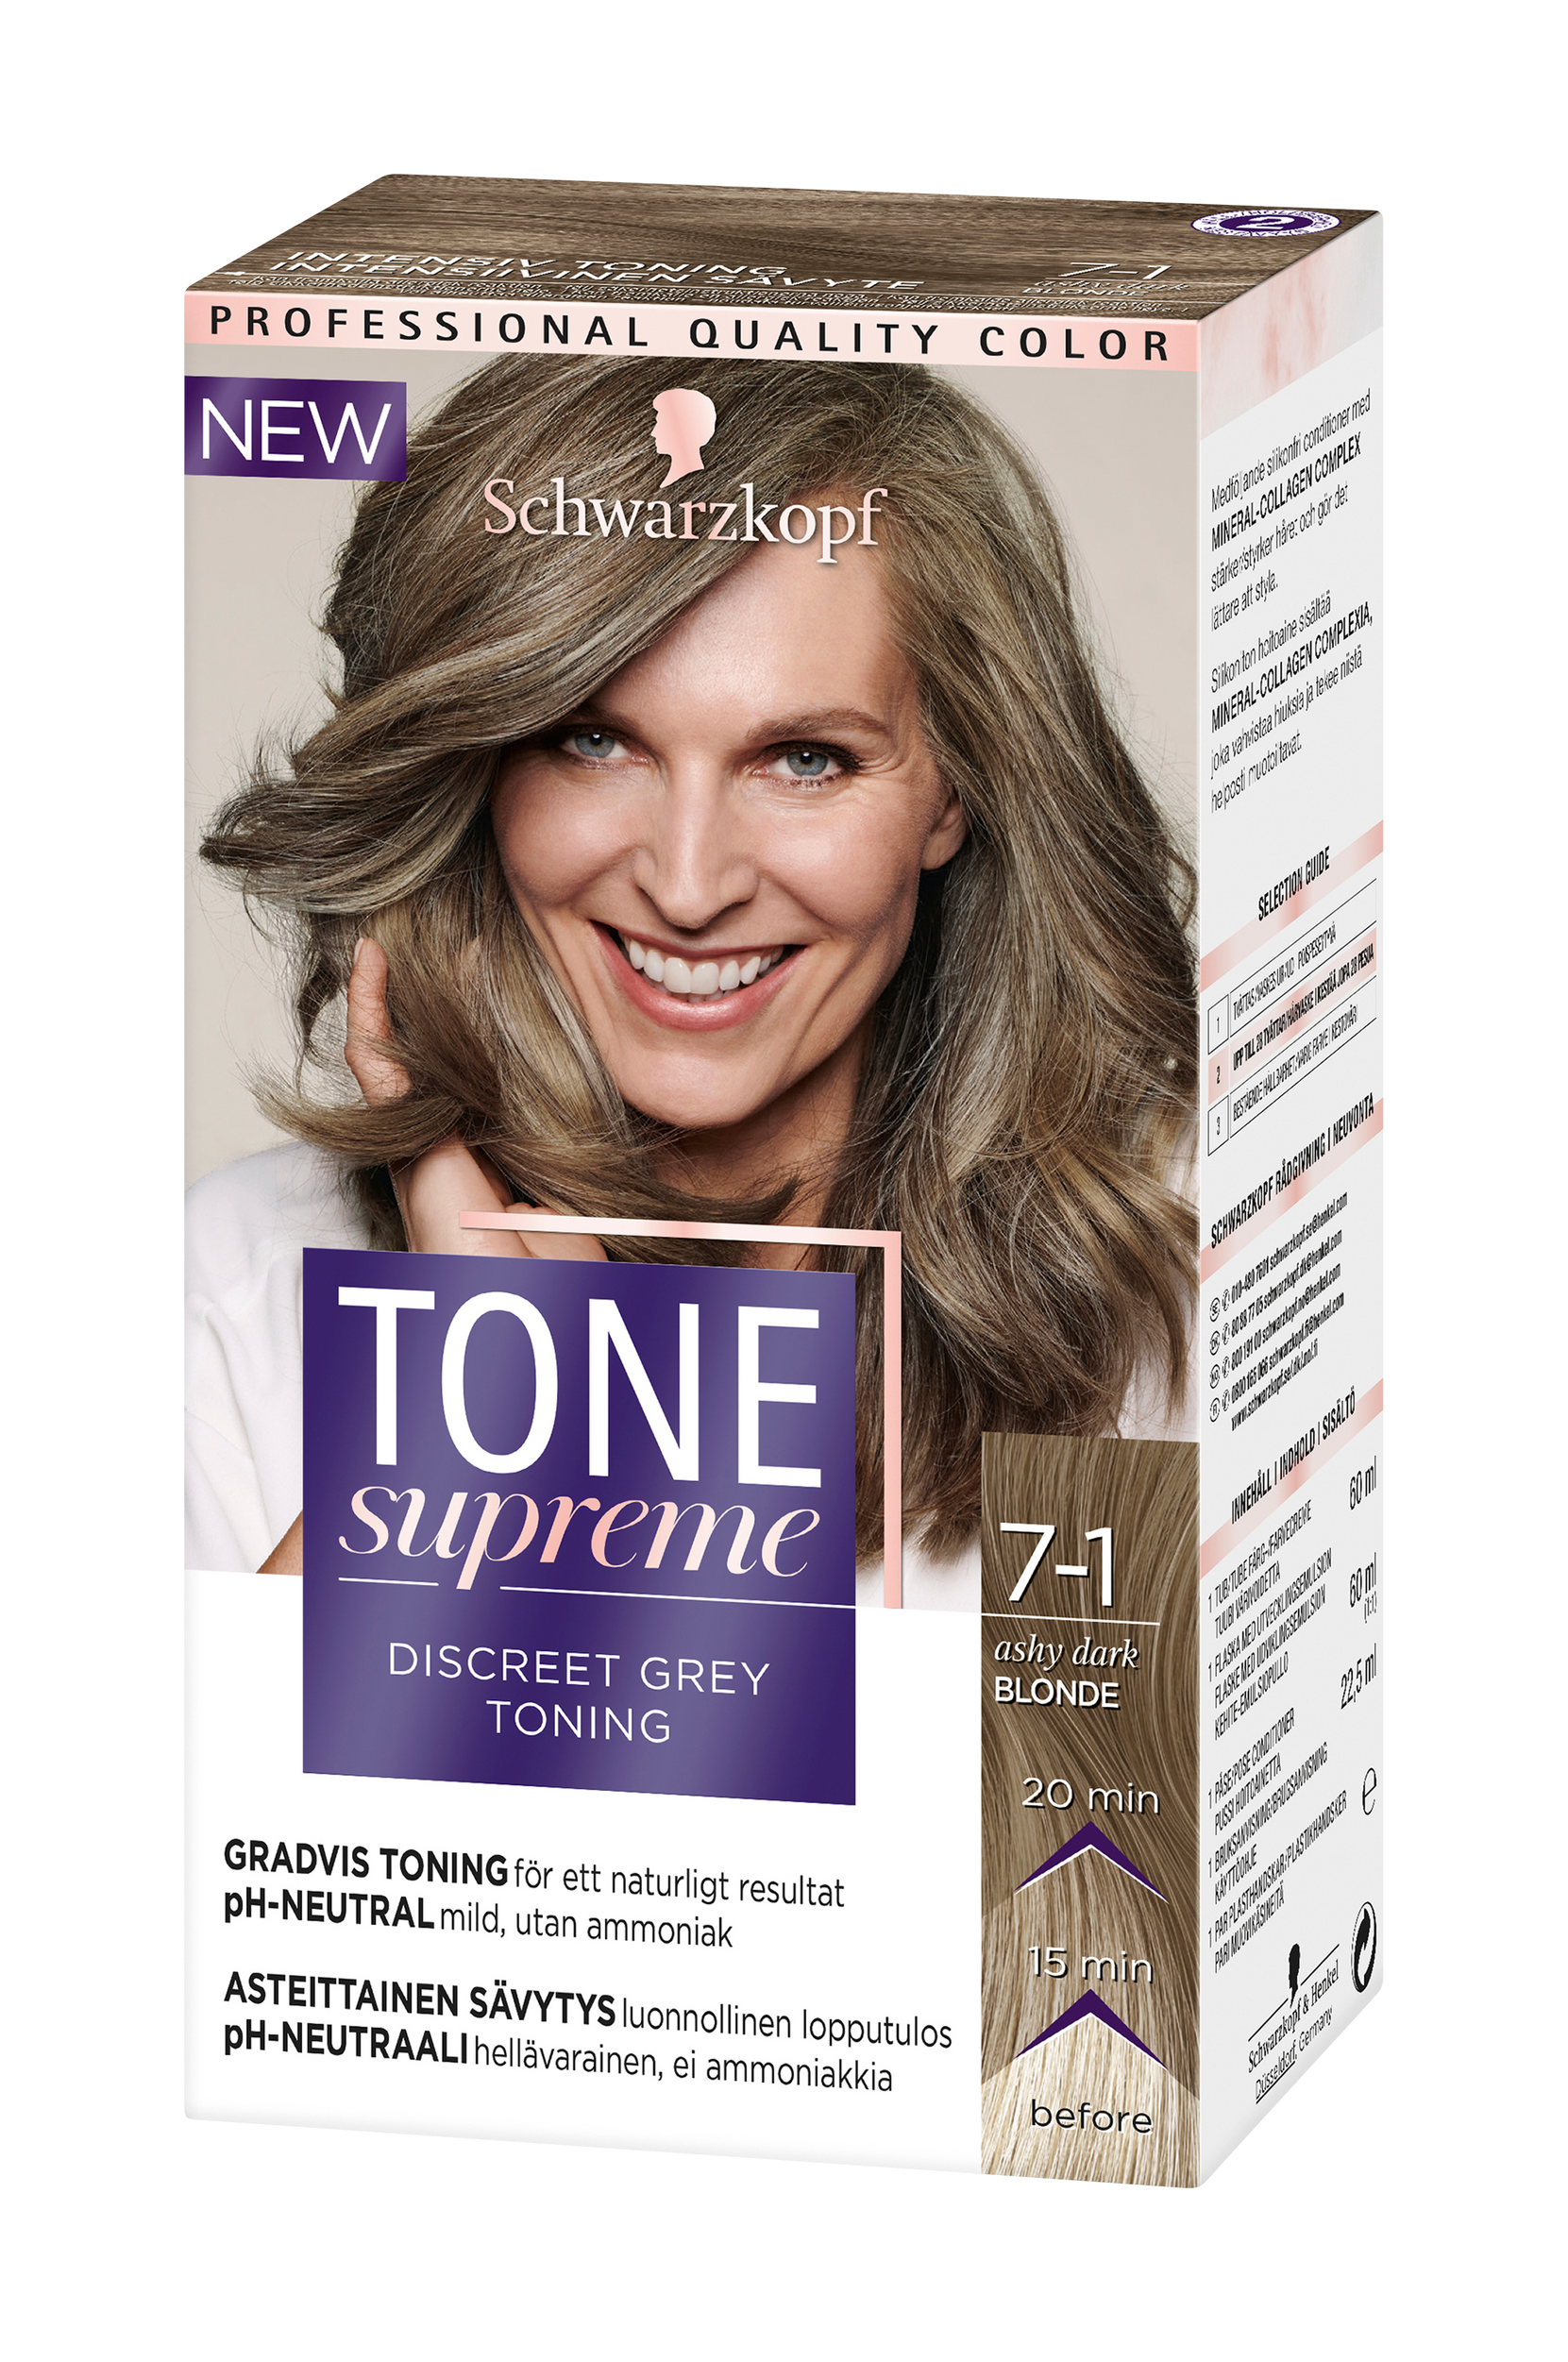 Tone Supreme 7 1 Ashy Dark blond, Schwarzkopf